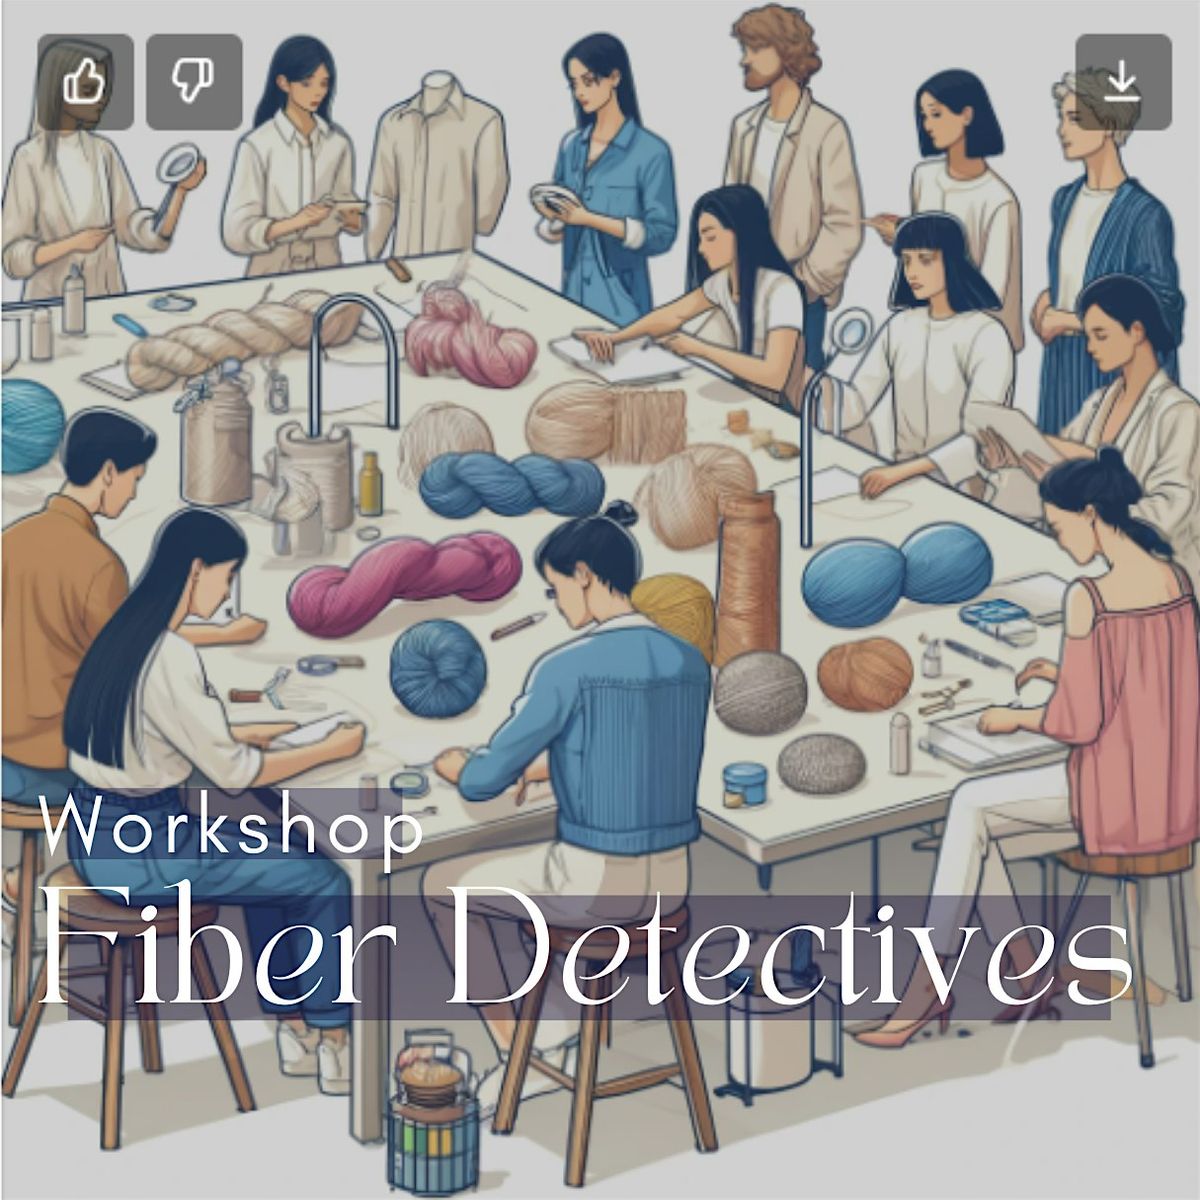 Workshop "Fiber Detectives: Faserarten und Erkennung ohne Kennzeichnung"